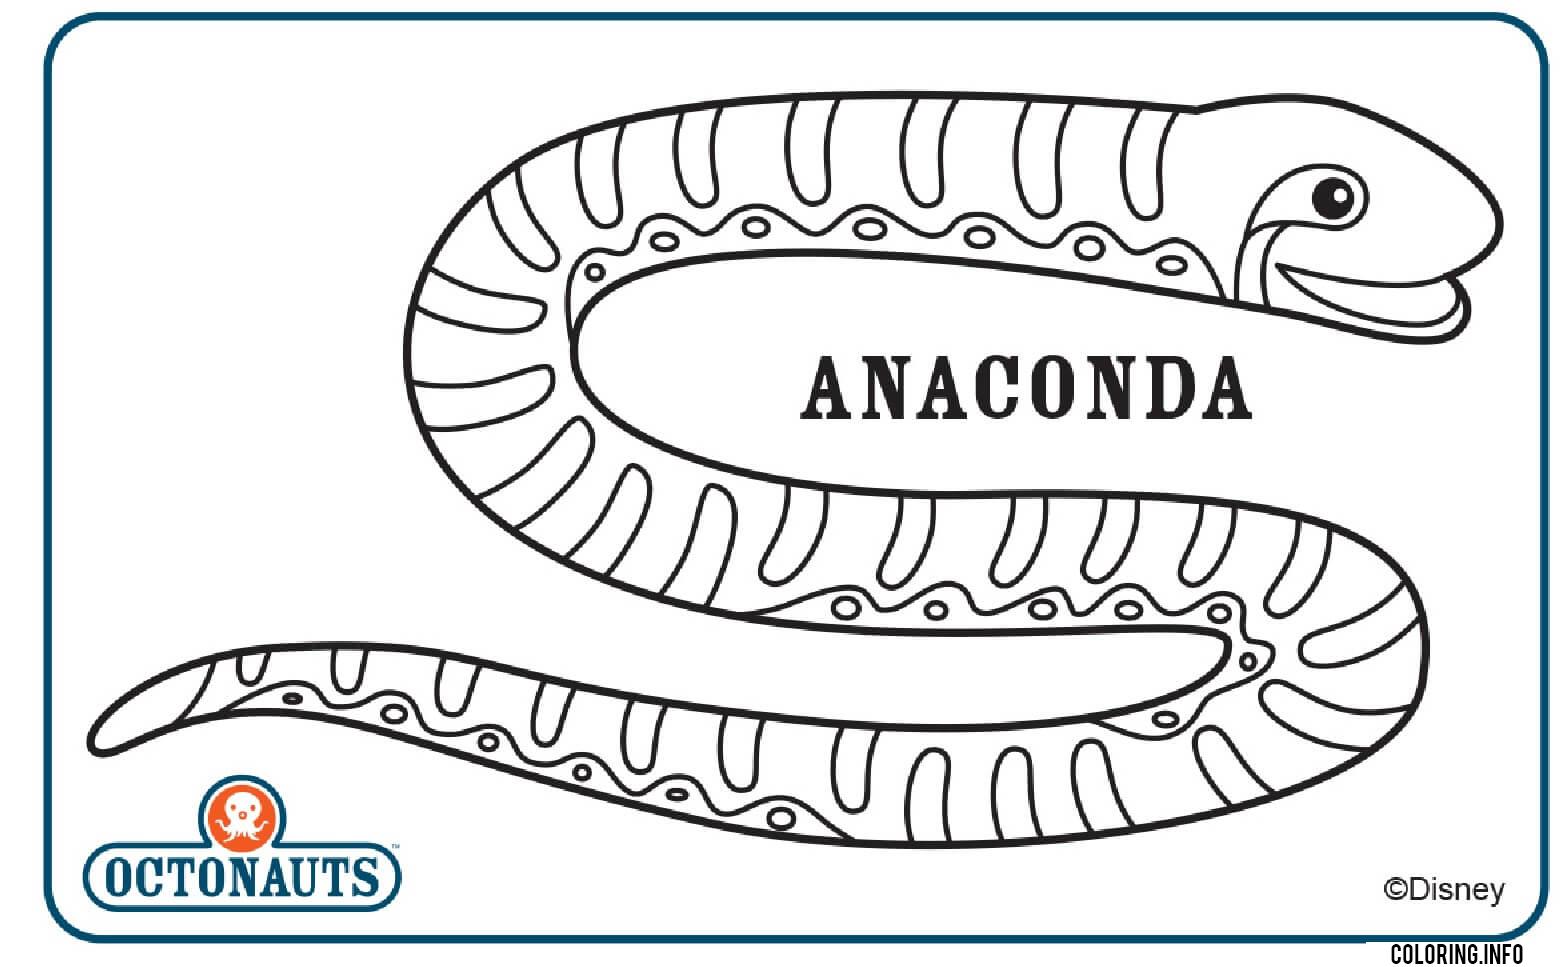 Anaconda Octonaut Creature coloring